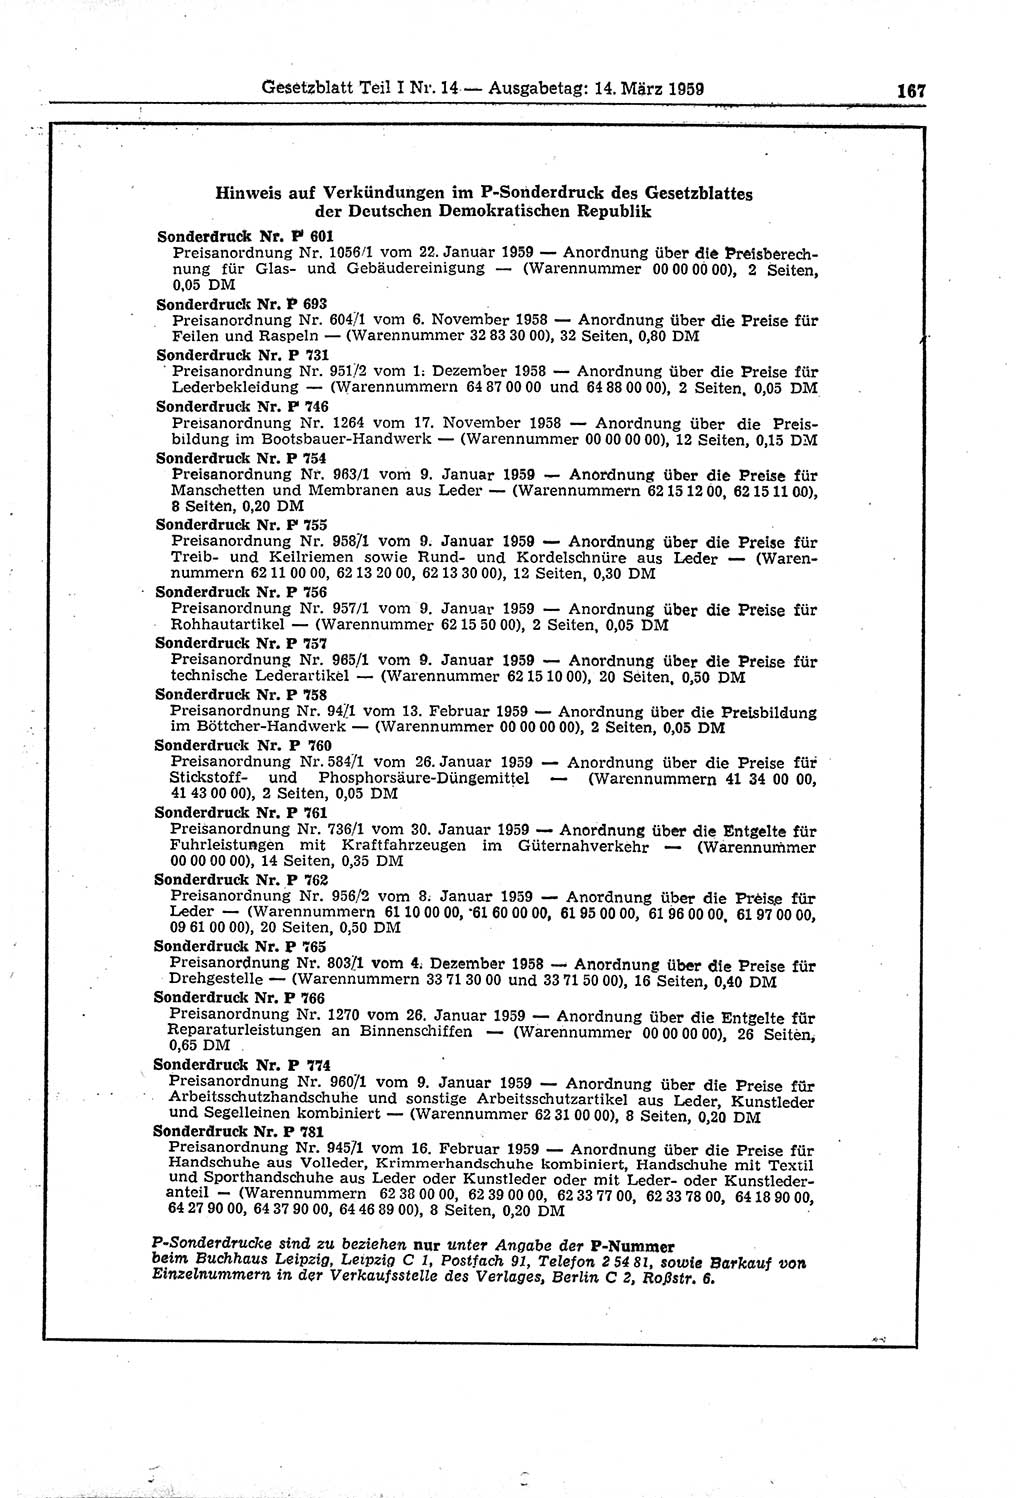 Gesetzblatt (GBl.) der Deutschen Demokratischen Republik (DDR) Teil Ⅰ 1959, Seite 167 (GBl. DDR Ⅰ 1959, S. 167)